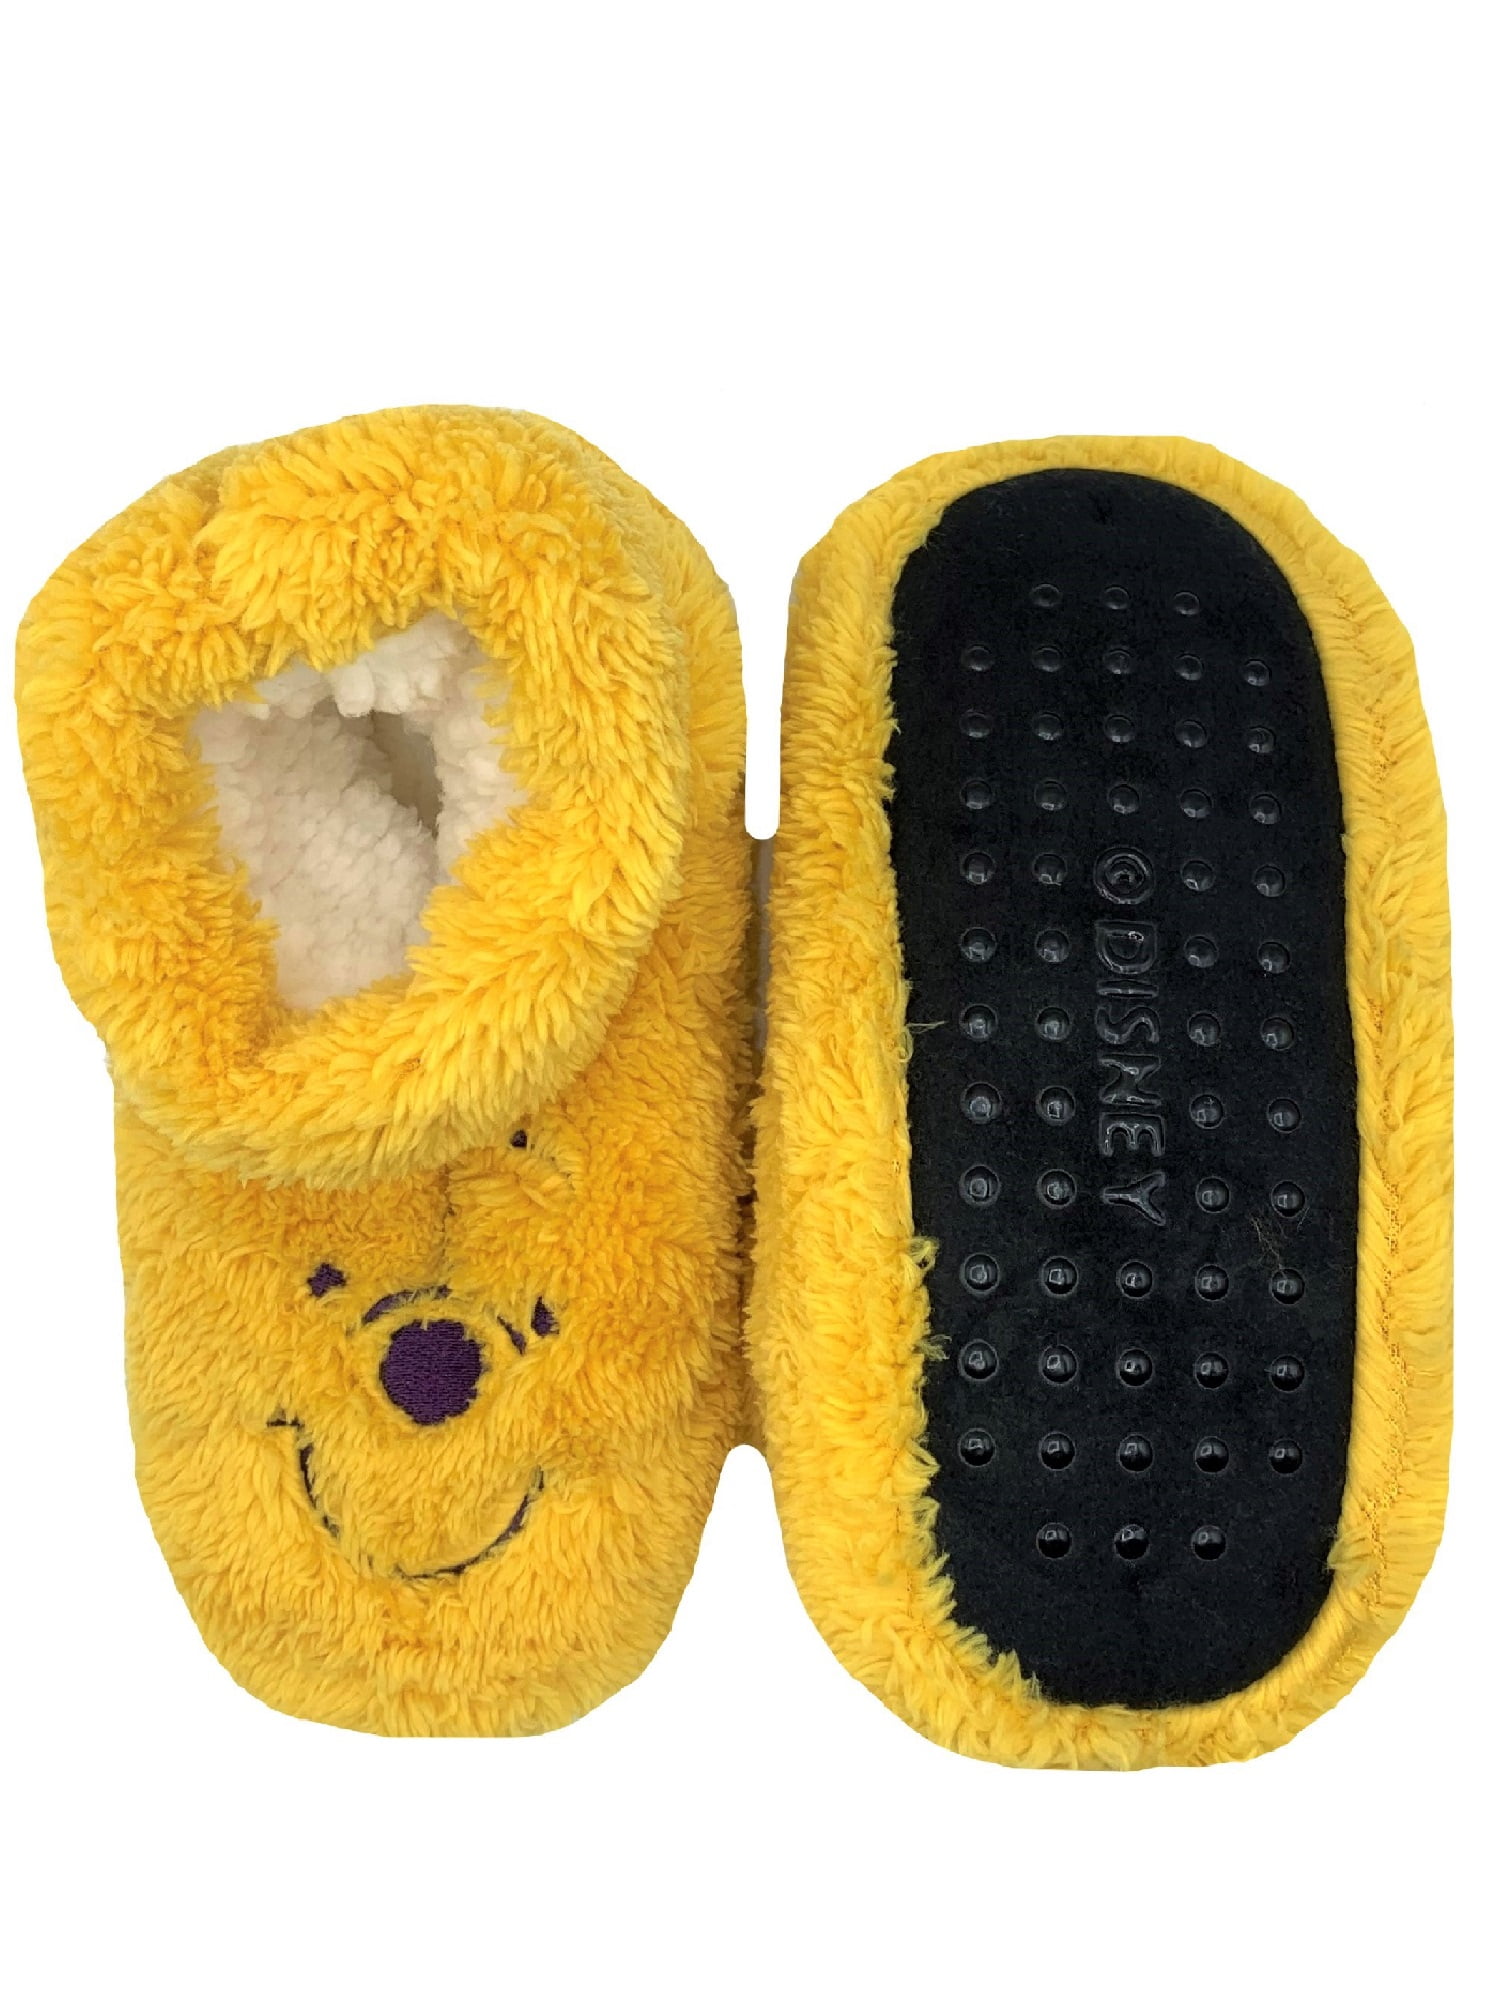 Winnie the Pooh Women's Bootie Slipper Socks, 1-Pack, Sizes S/M & M/L